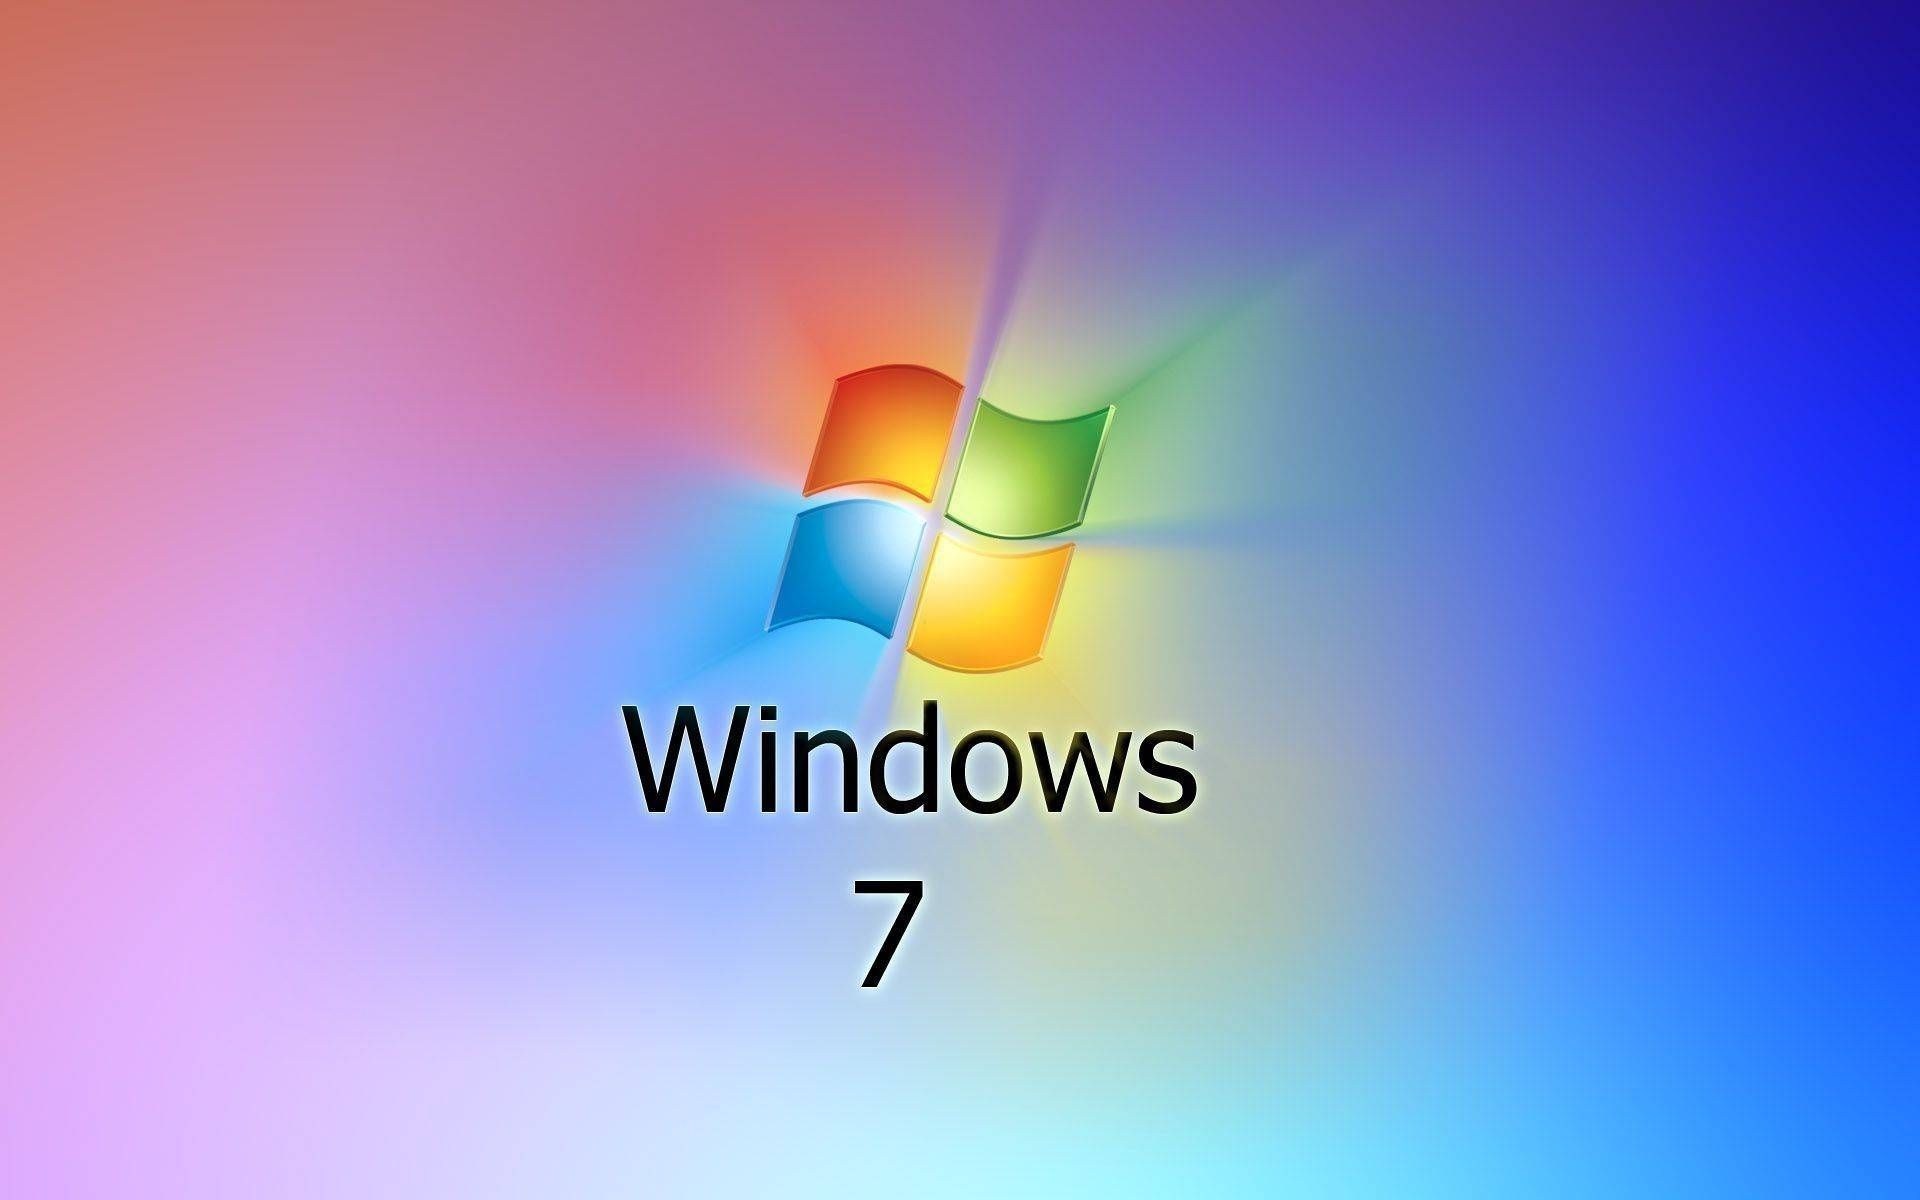 Tải hình nền Win 7 miễn phí: Bạn muốn tải hình nền Windows 7 miễn phí để đổi không gian trang trí máy tính của mình? Chúng tôi có sẵn hàng trăm hình nền độc đáo để bạn có thể thay đổi theo sở thích. Chỉ cần thao tác đơn giản, bạn sẽ có ngay những hình nền đẹp để cập nhật cho máy tính của mình.